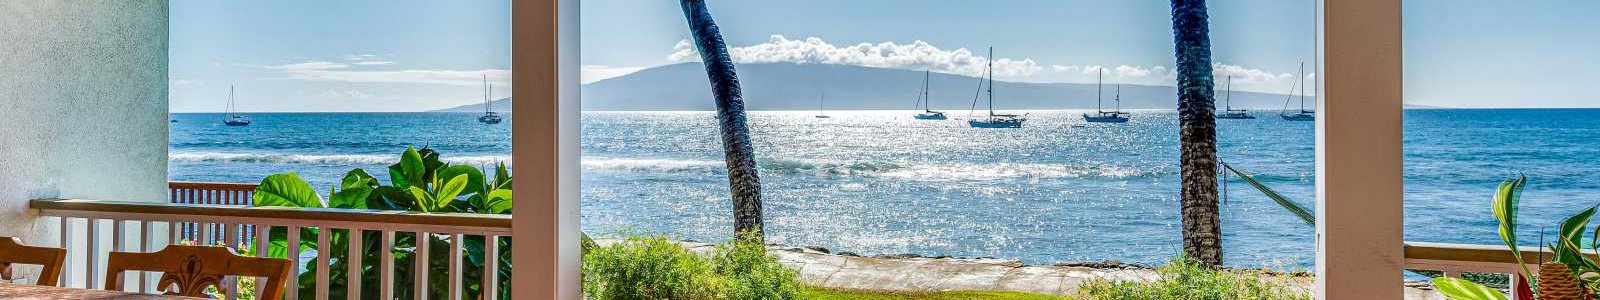 Maui Villa Tours & Inspections